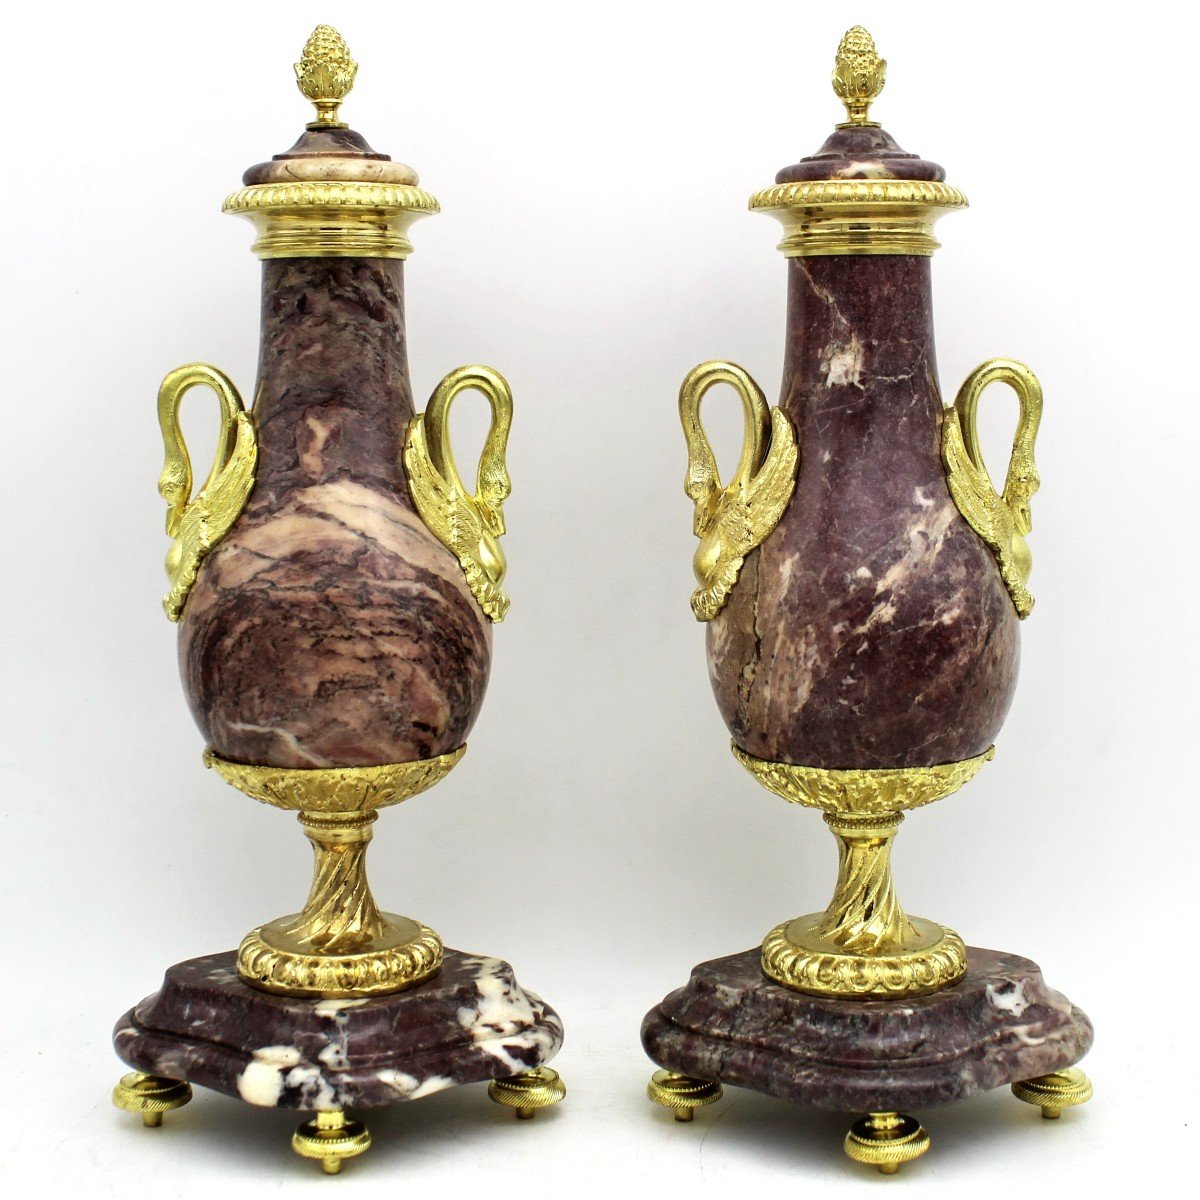 Ancien Paire de Cassolettes Vases d'époque Napoleone III en bronze doré et marbre - 19ème